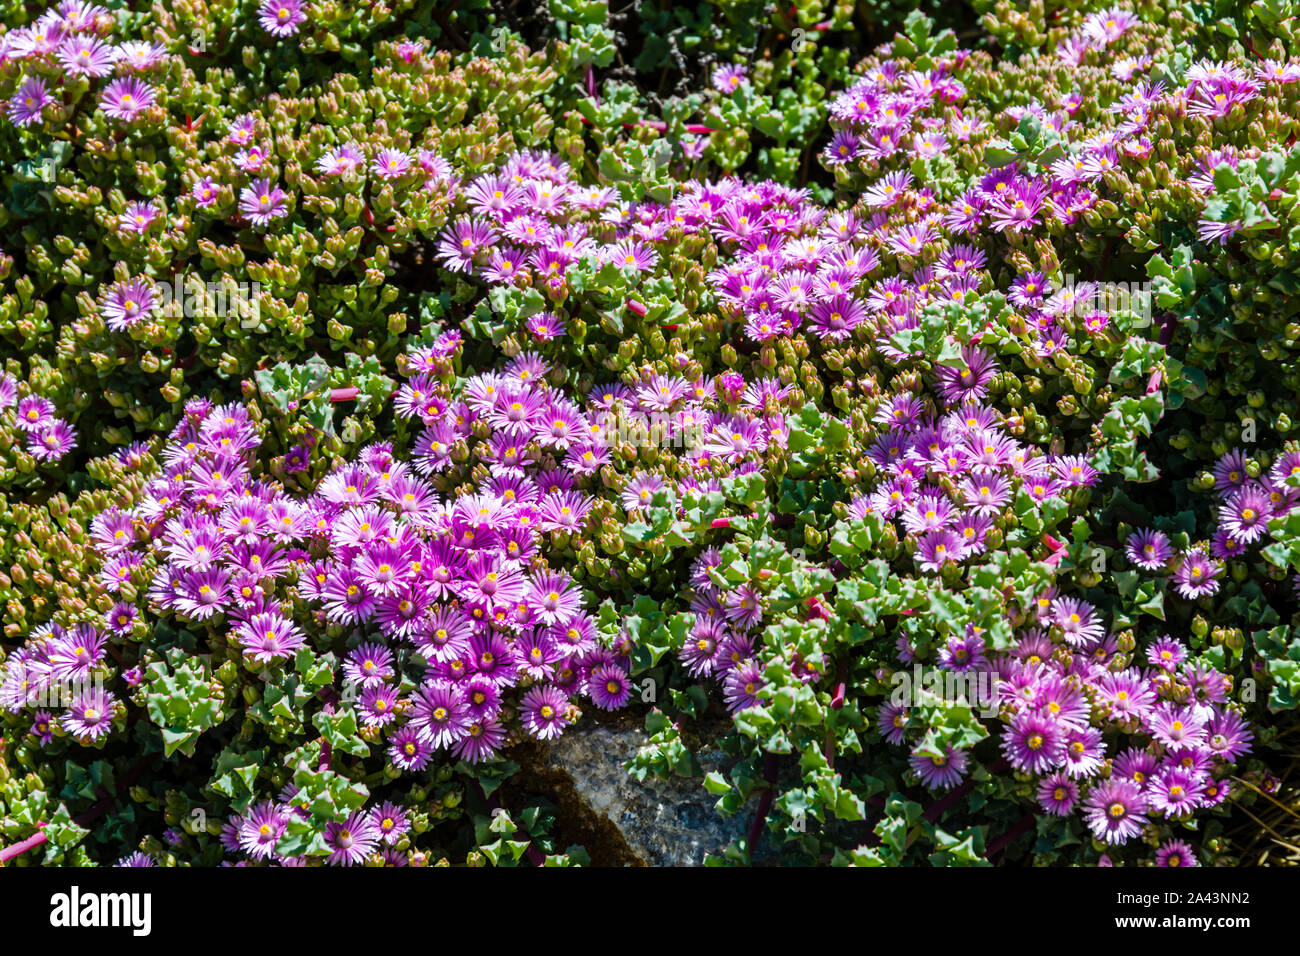 University of California at Santa Cruz Arboretum, Deltoid-Leaved Dew Plant Stock Photo